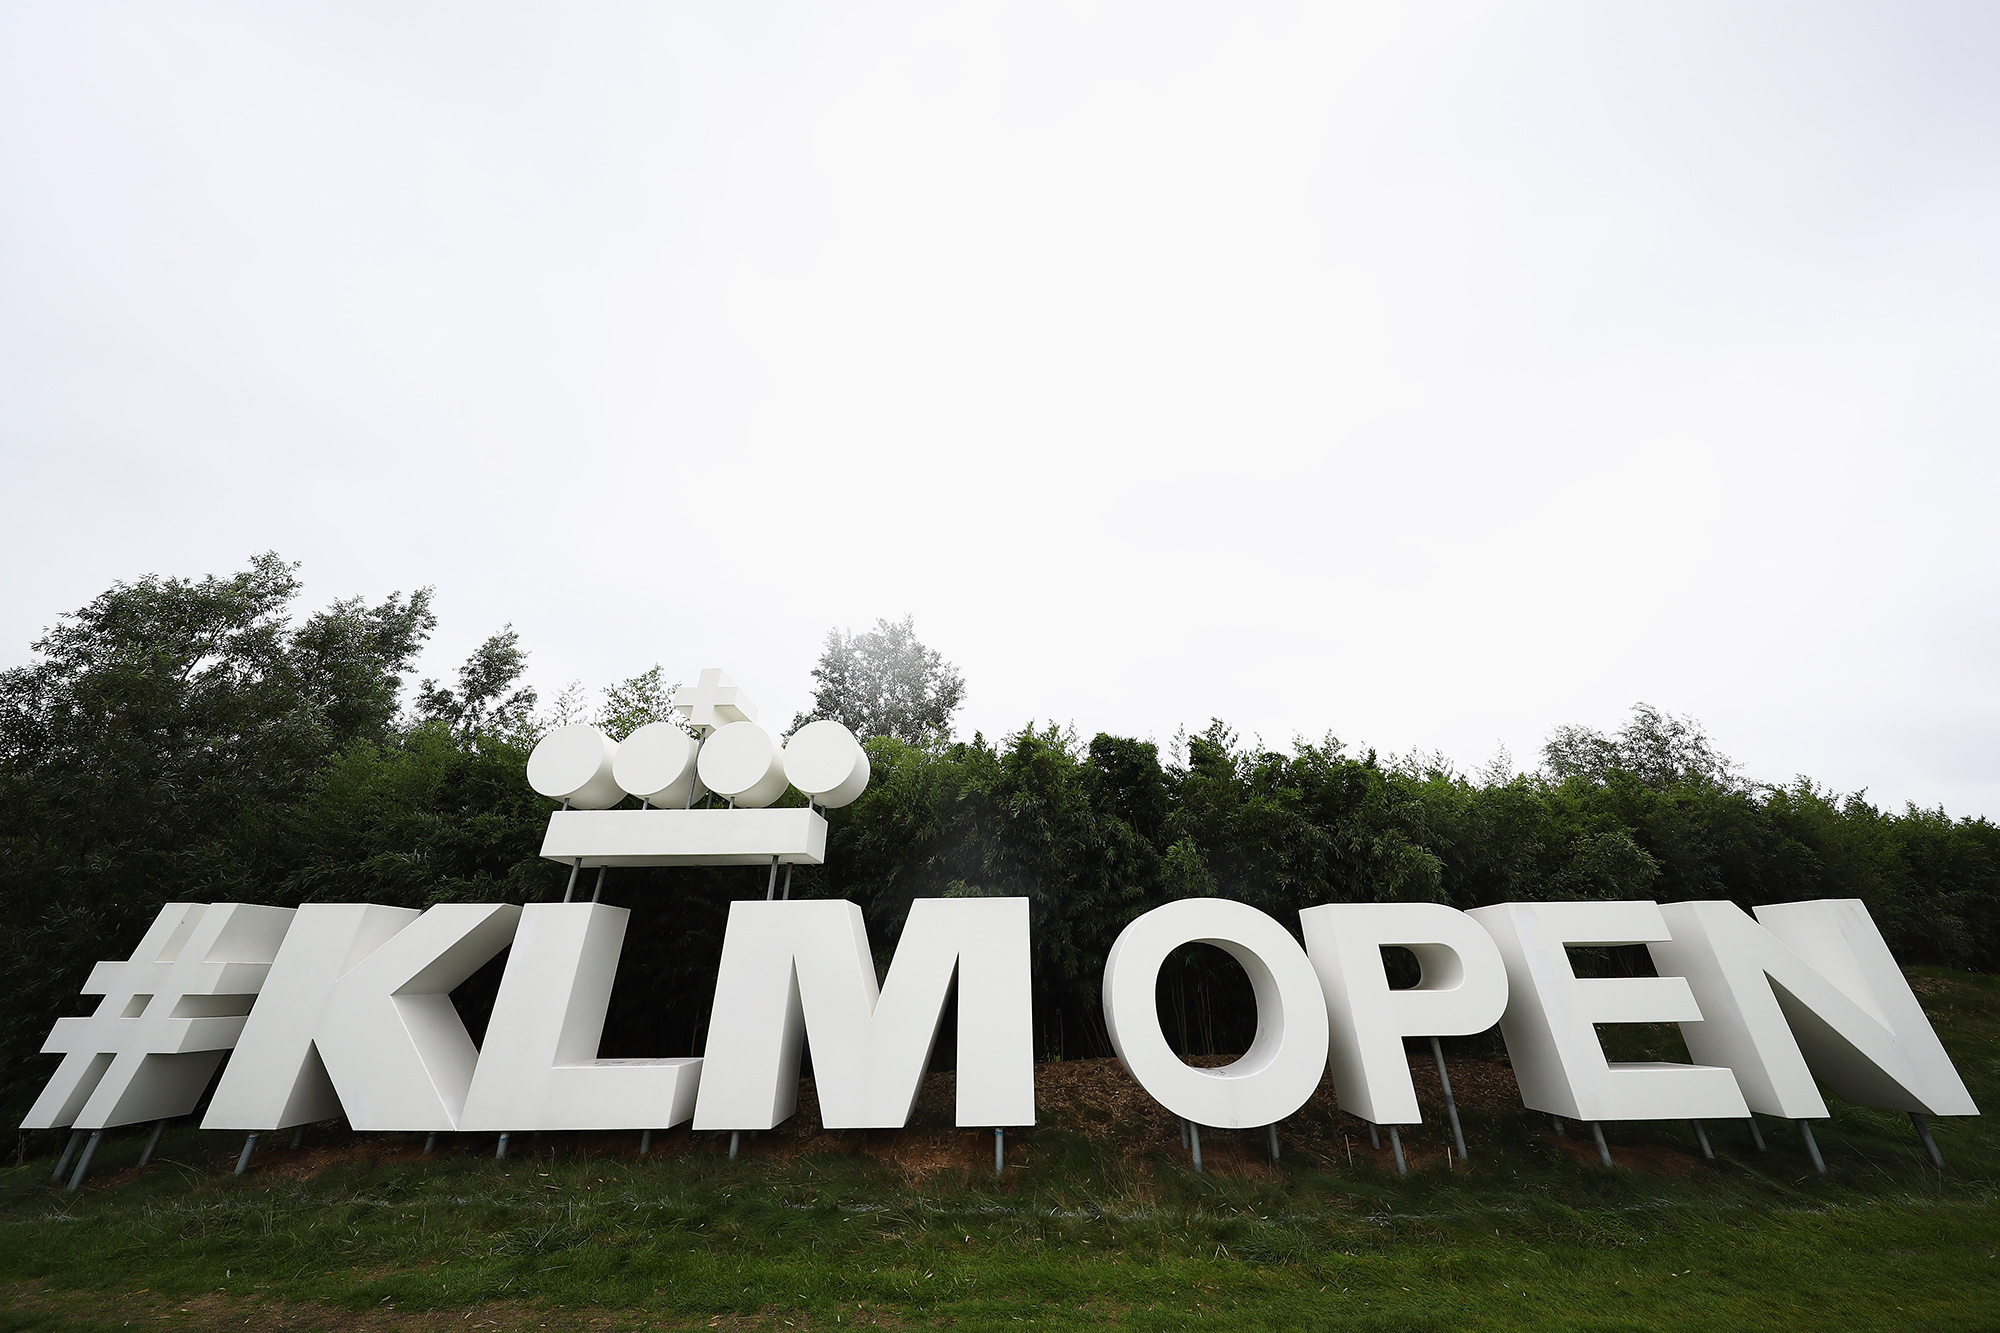 2019 KLM Open prize money breakdown